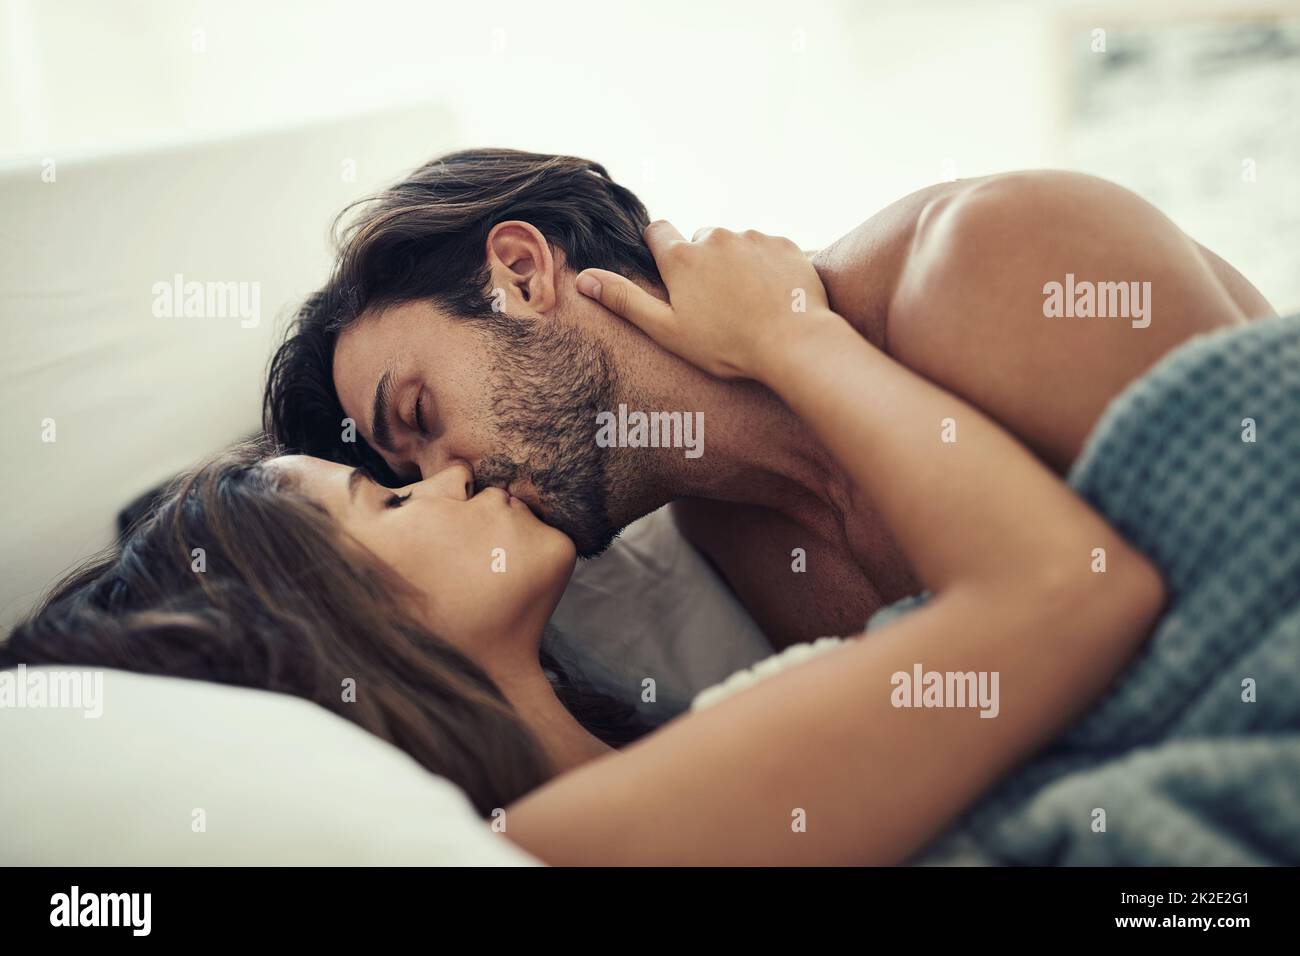 Intim werden. Eine kurze Aufnahme eines anhänglichen jungen Paares, das im Bett intime war. Stockfoto